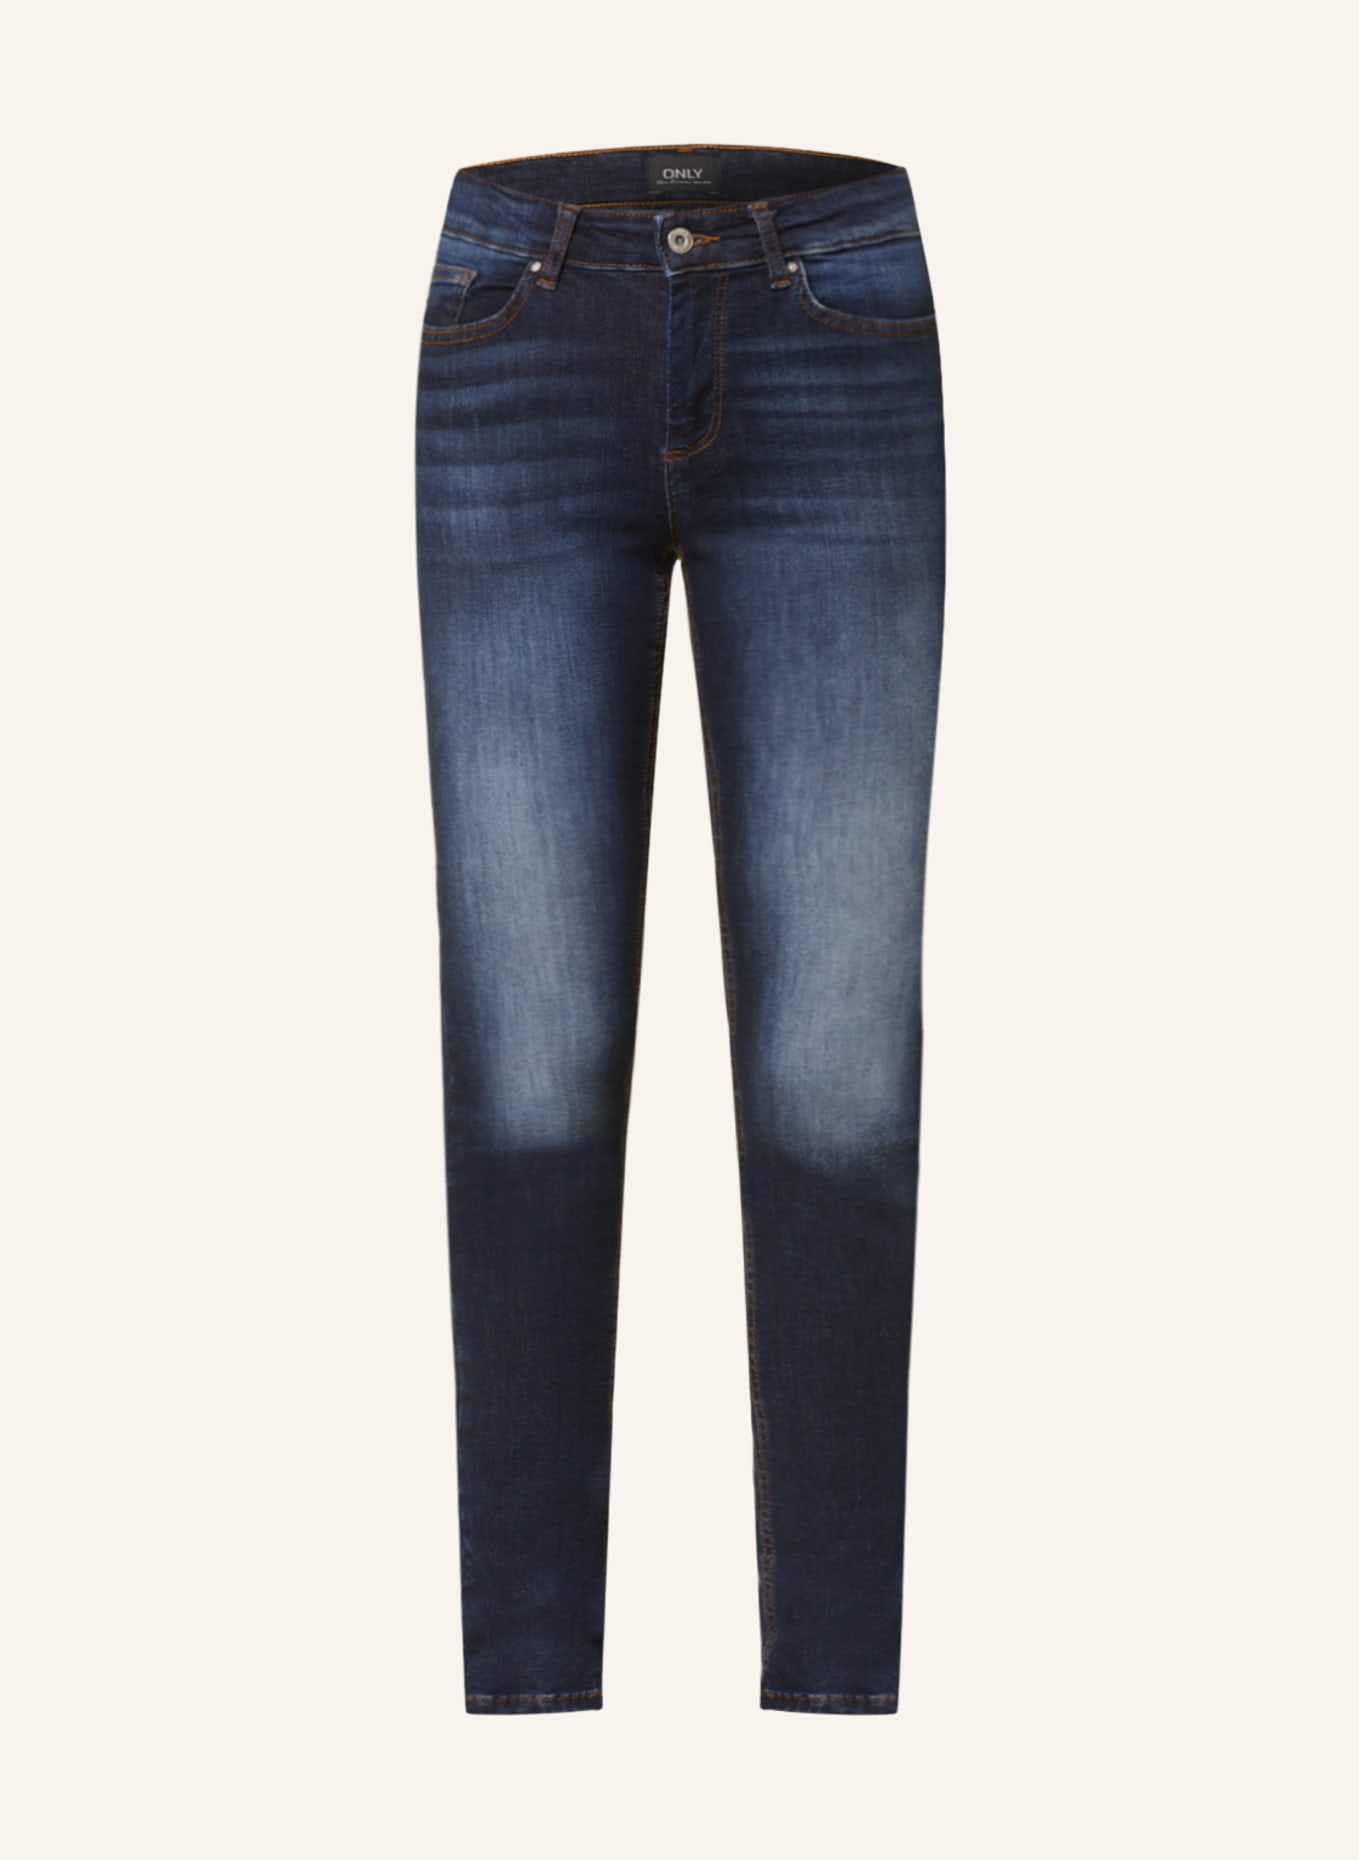 ONLY Skinny Jeans, Farbe: Dark Blue Denim/REA837 (Bild 1)